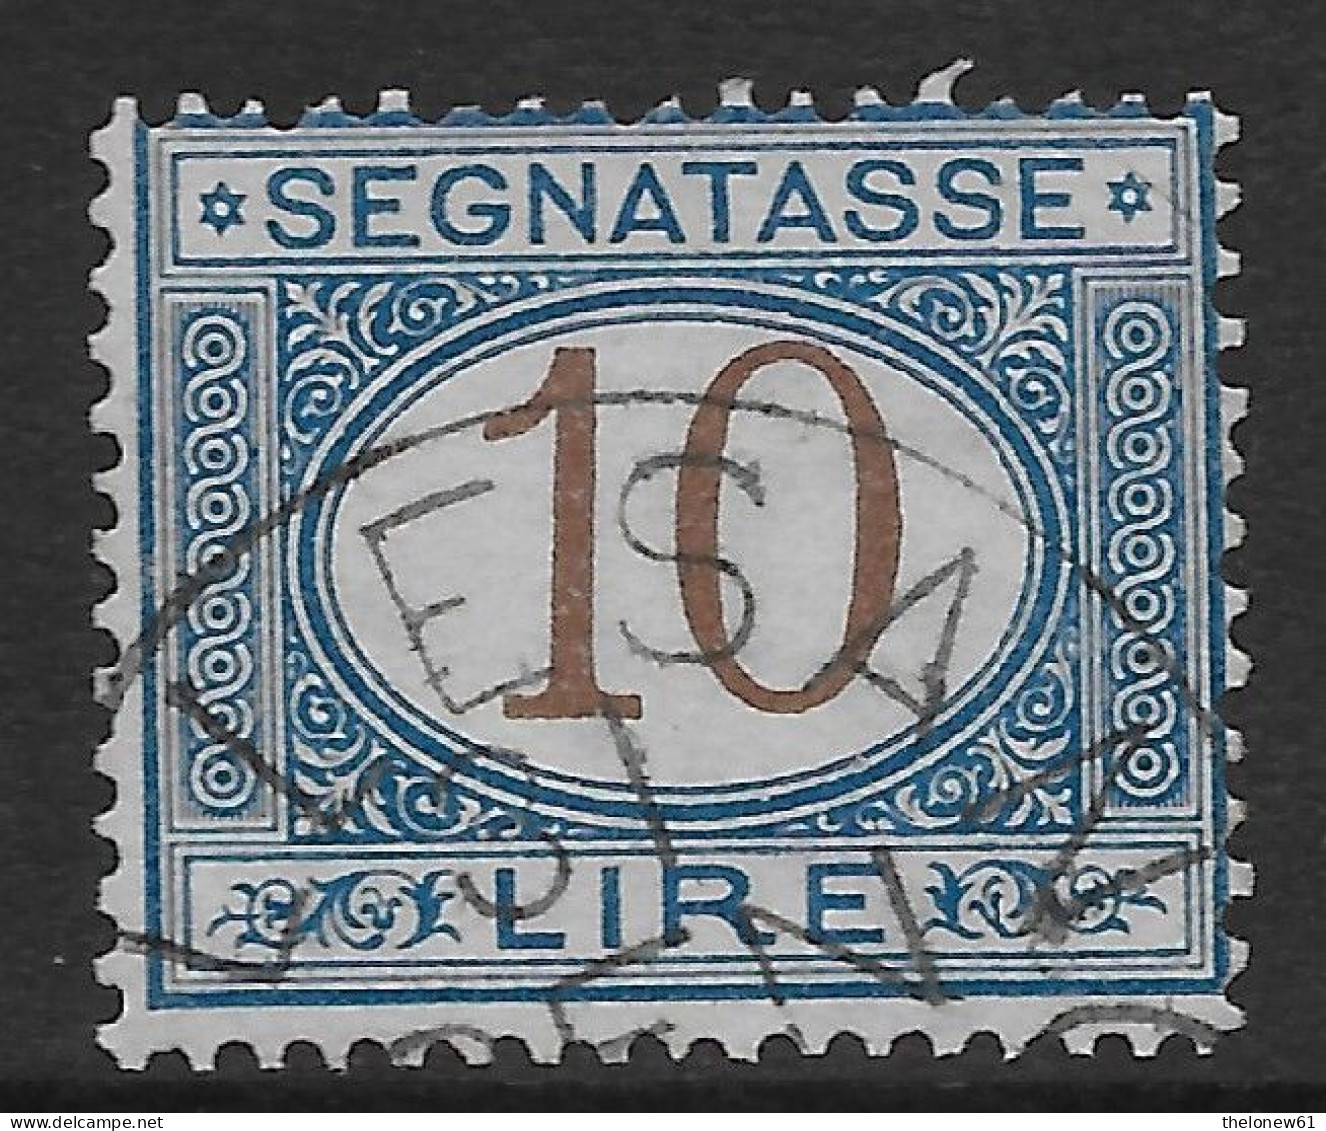 Italia Italy 1870 Regno Segnatasse L10 Sa N.S14 US - Taxe